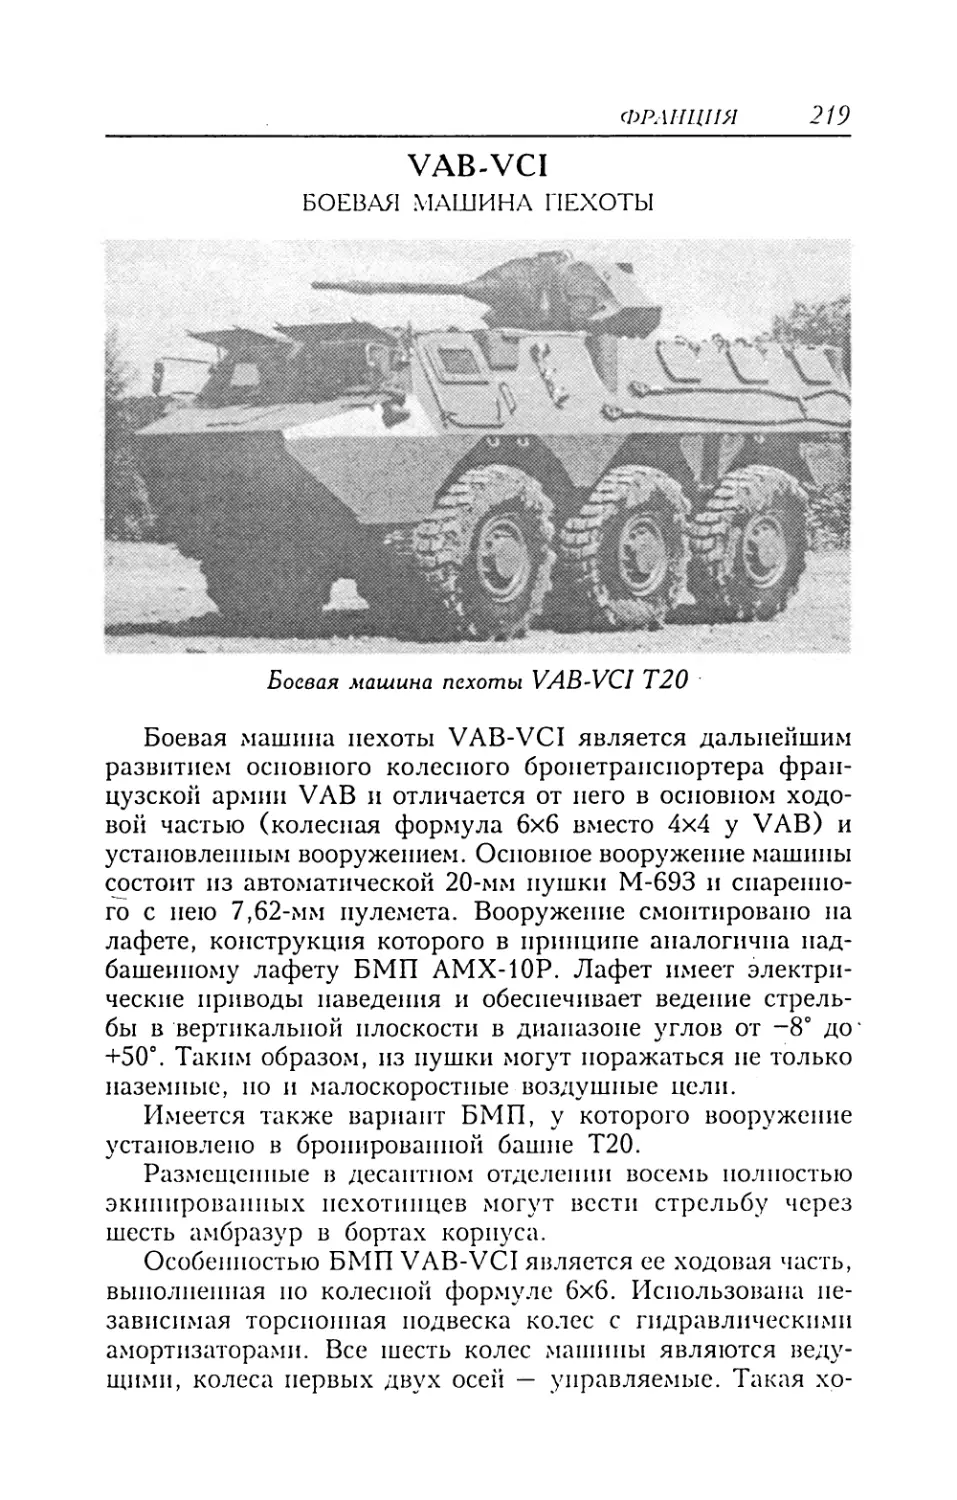 VAB-VCI